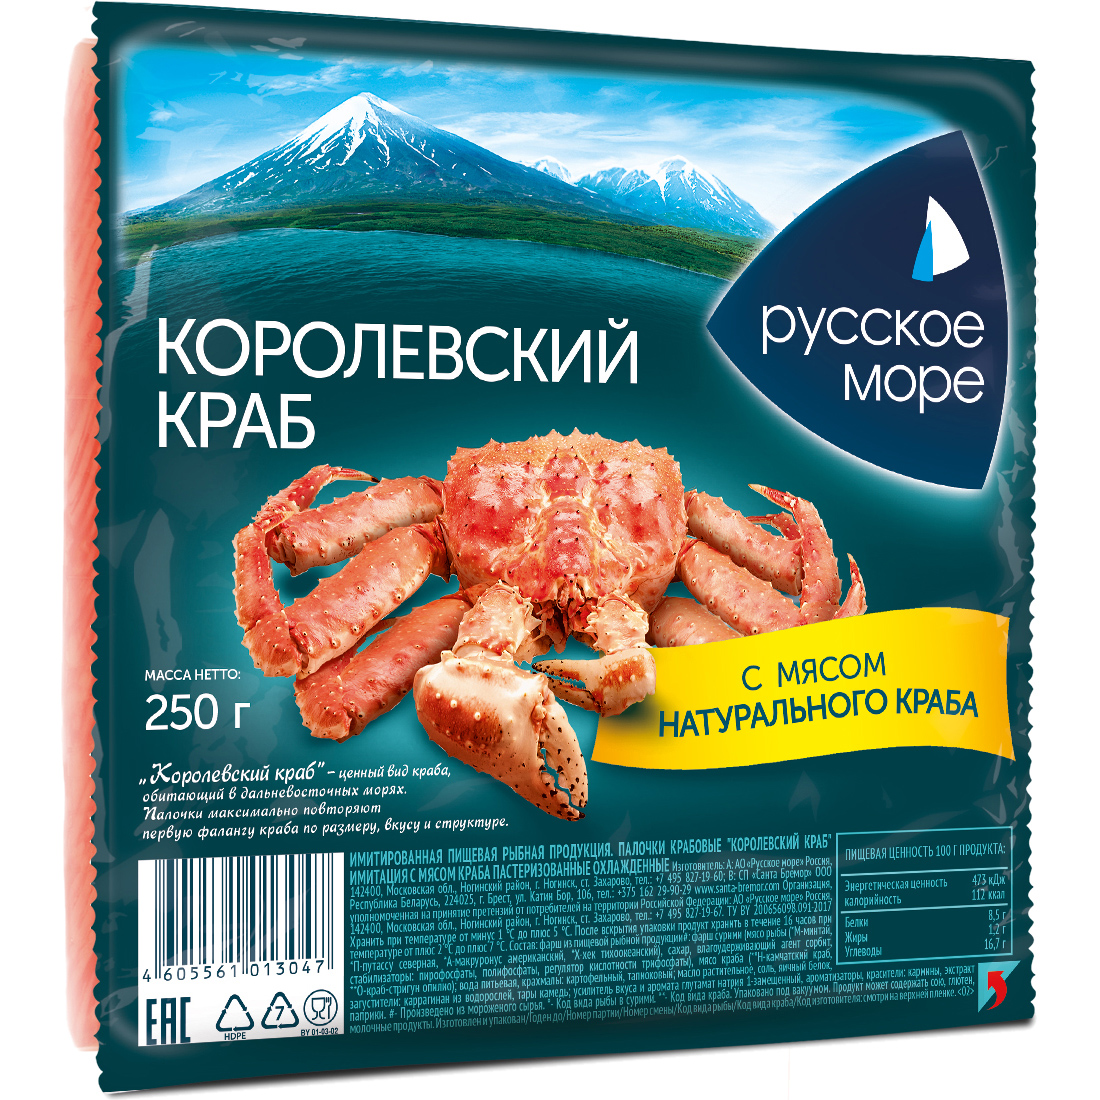 Крабовые палочки Русское море Королевский краб с мясом натурального краба охлажденные 250 г